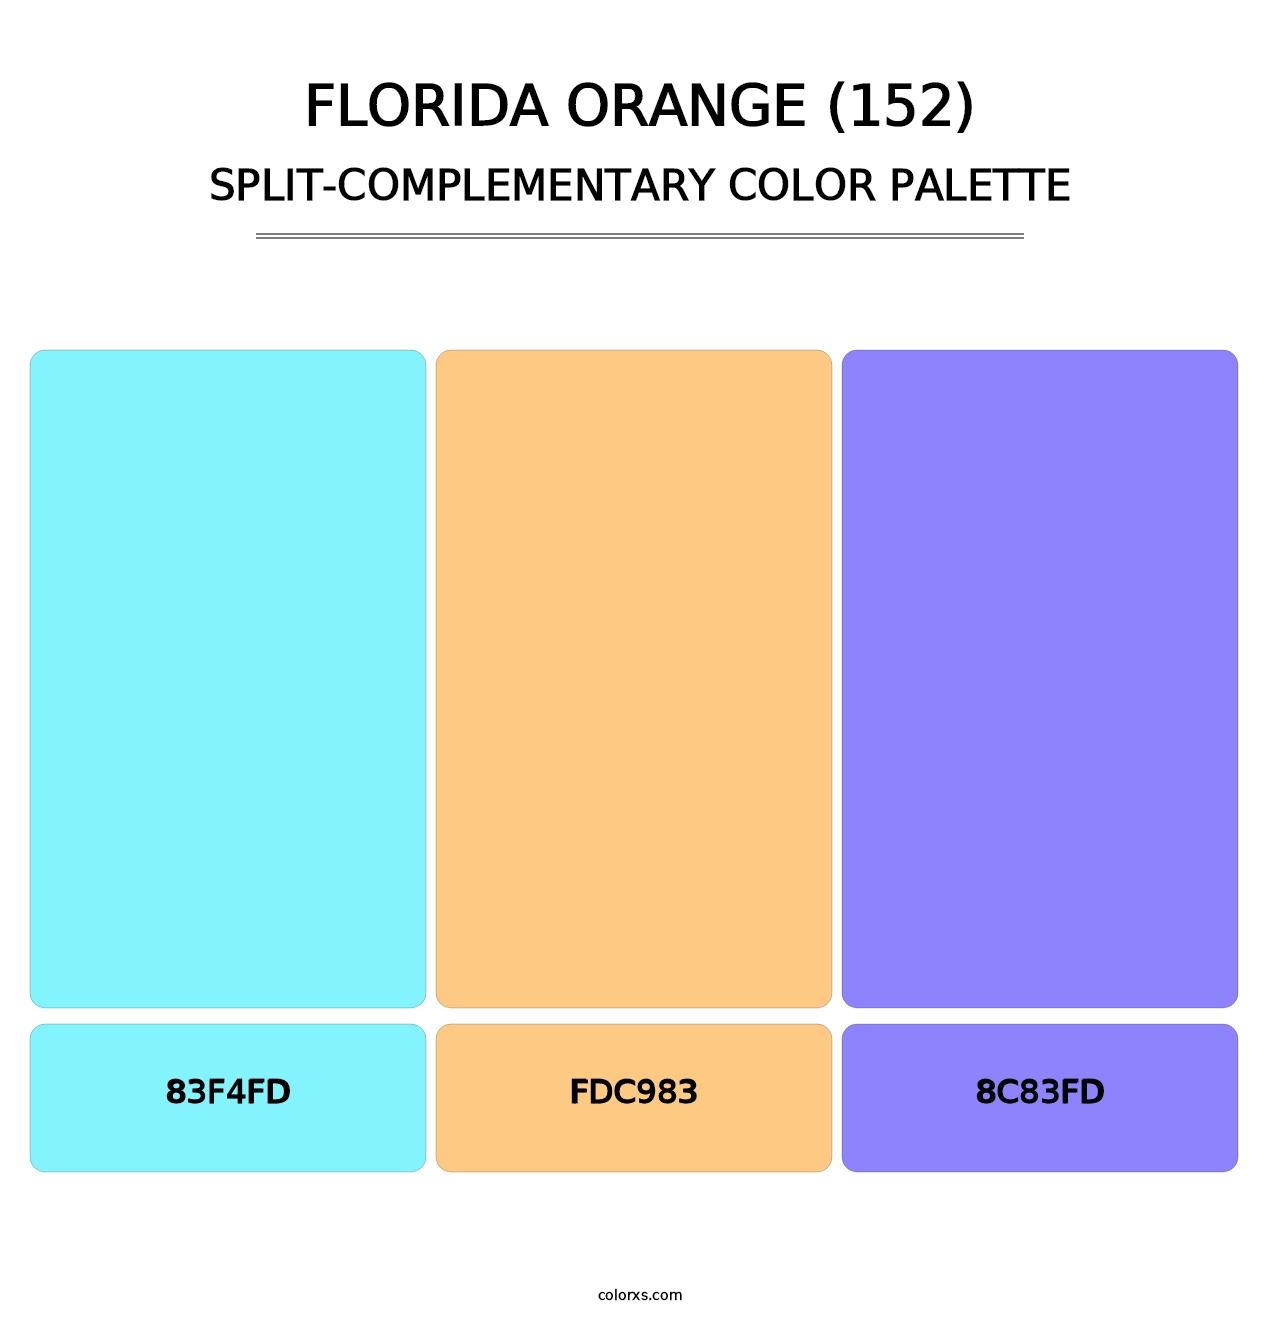 Florida Orange (152) - Split-Complementary Color Palette